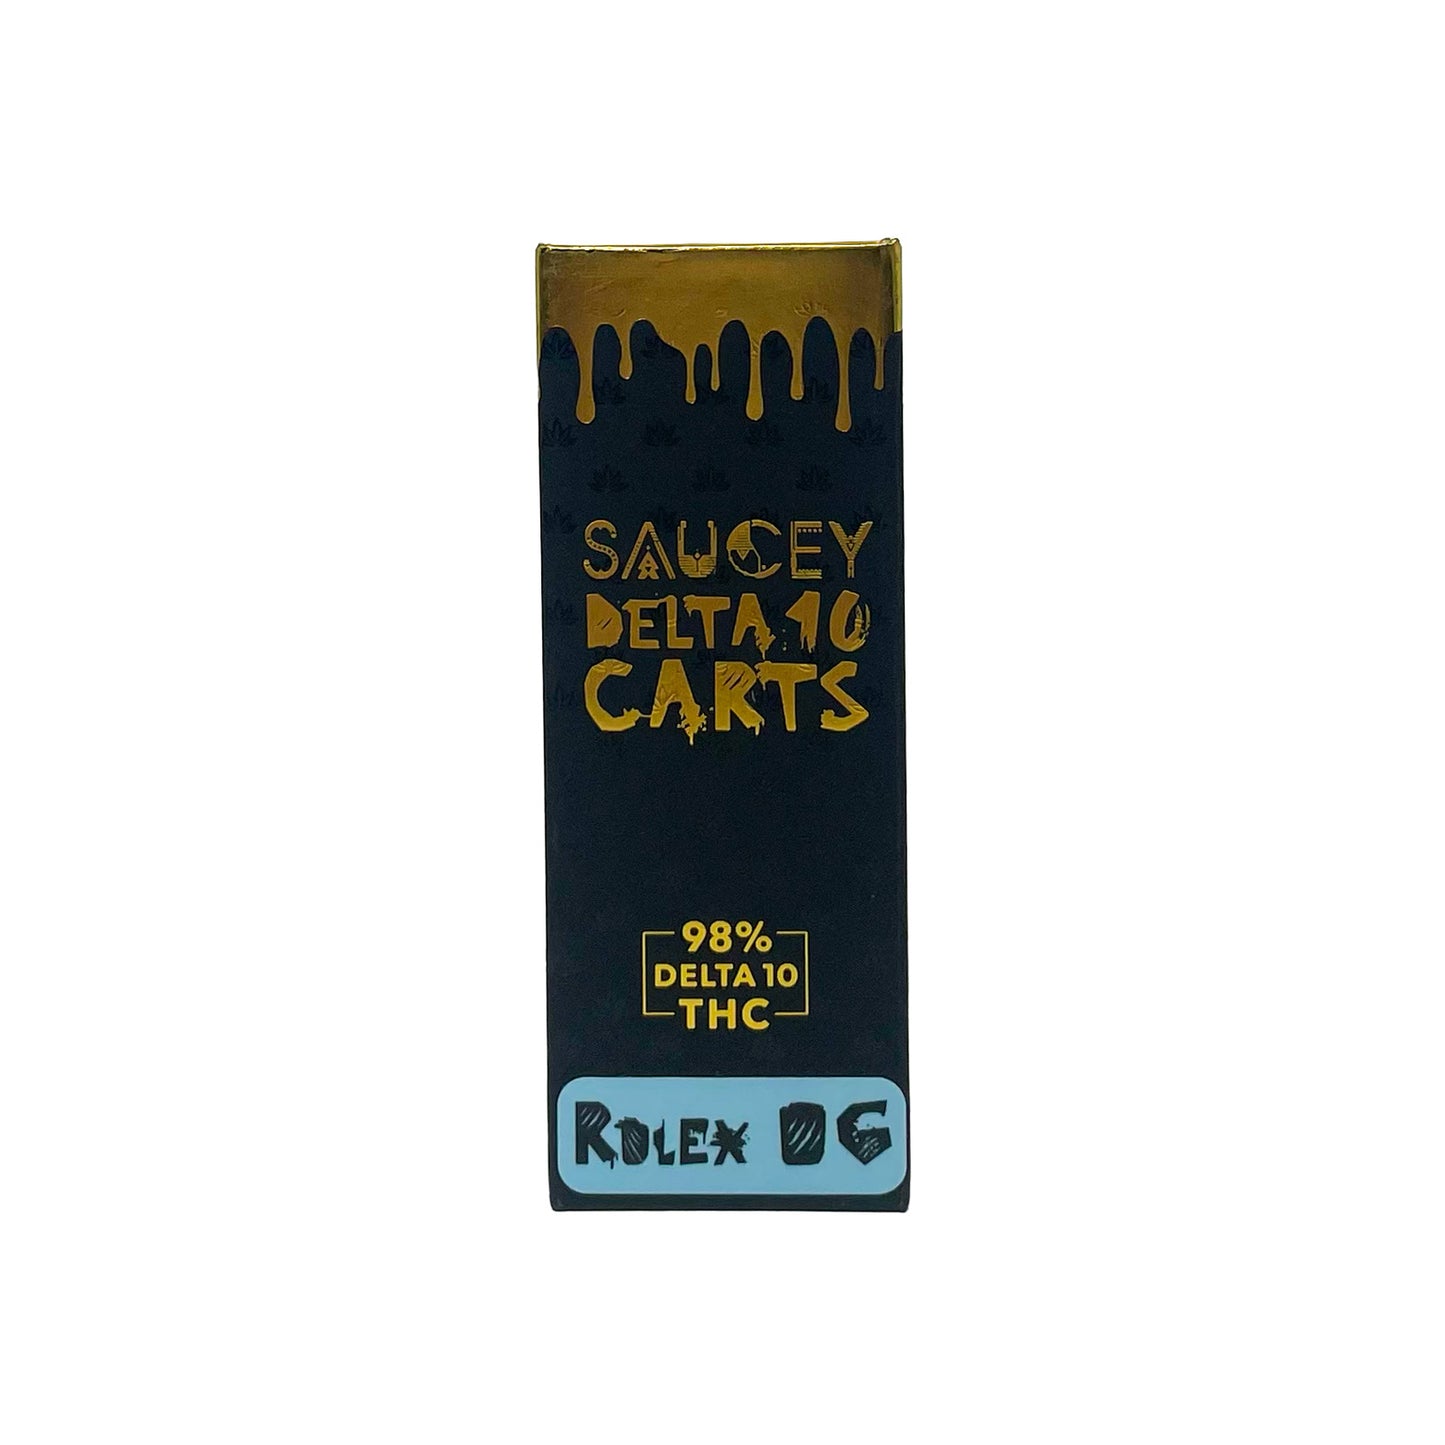 Saucey Delta 10 Carts